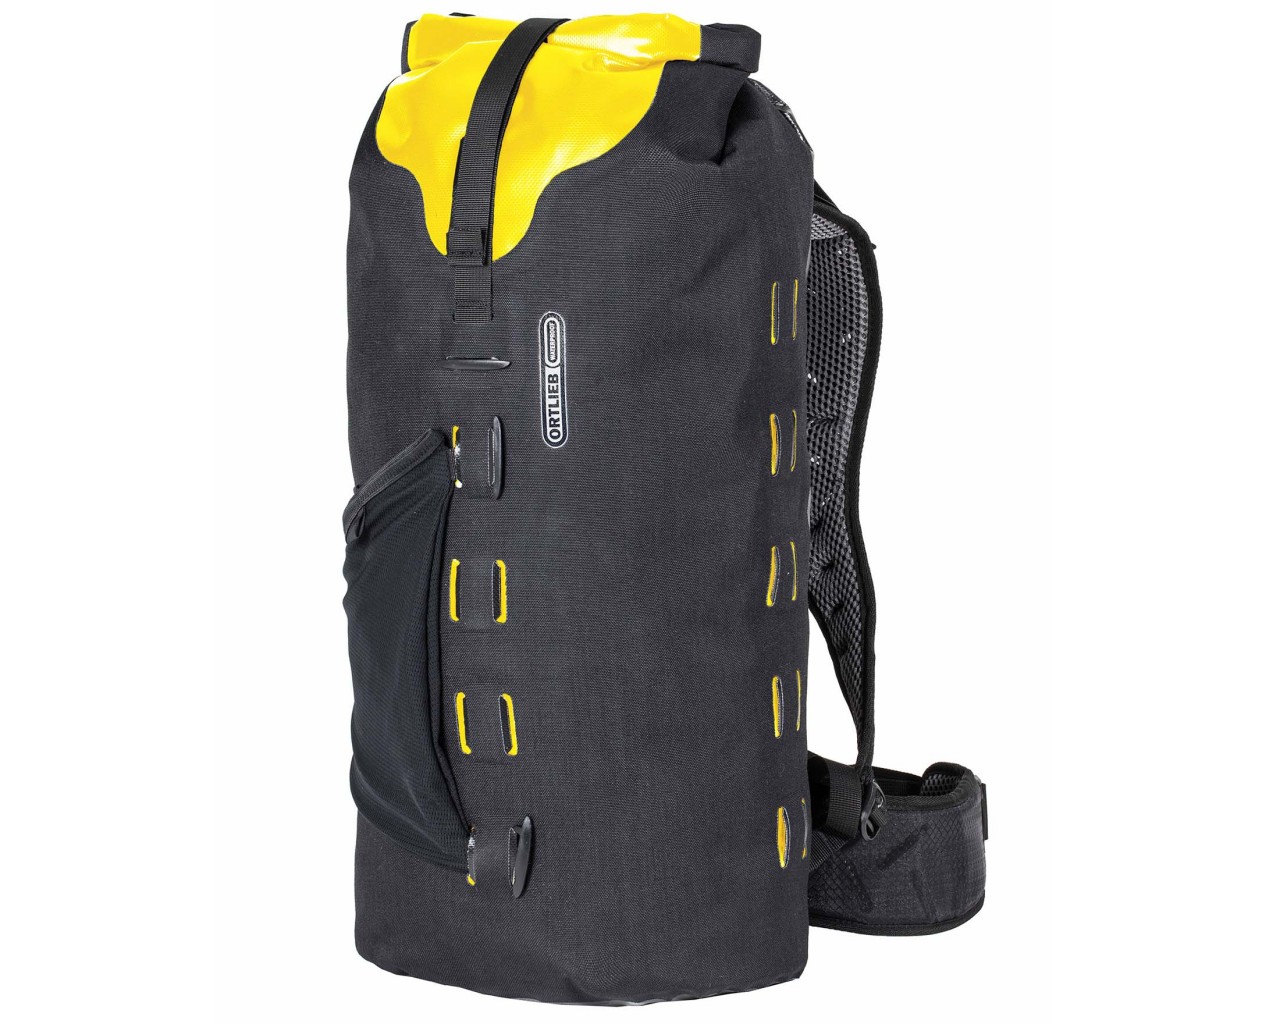 Ortlieb Gear-Pack 25 liter waterproof dry bag/backpack | black-sunyellow